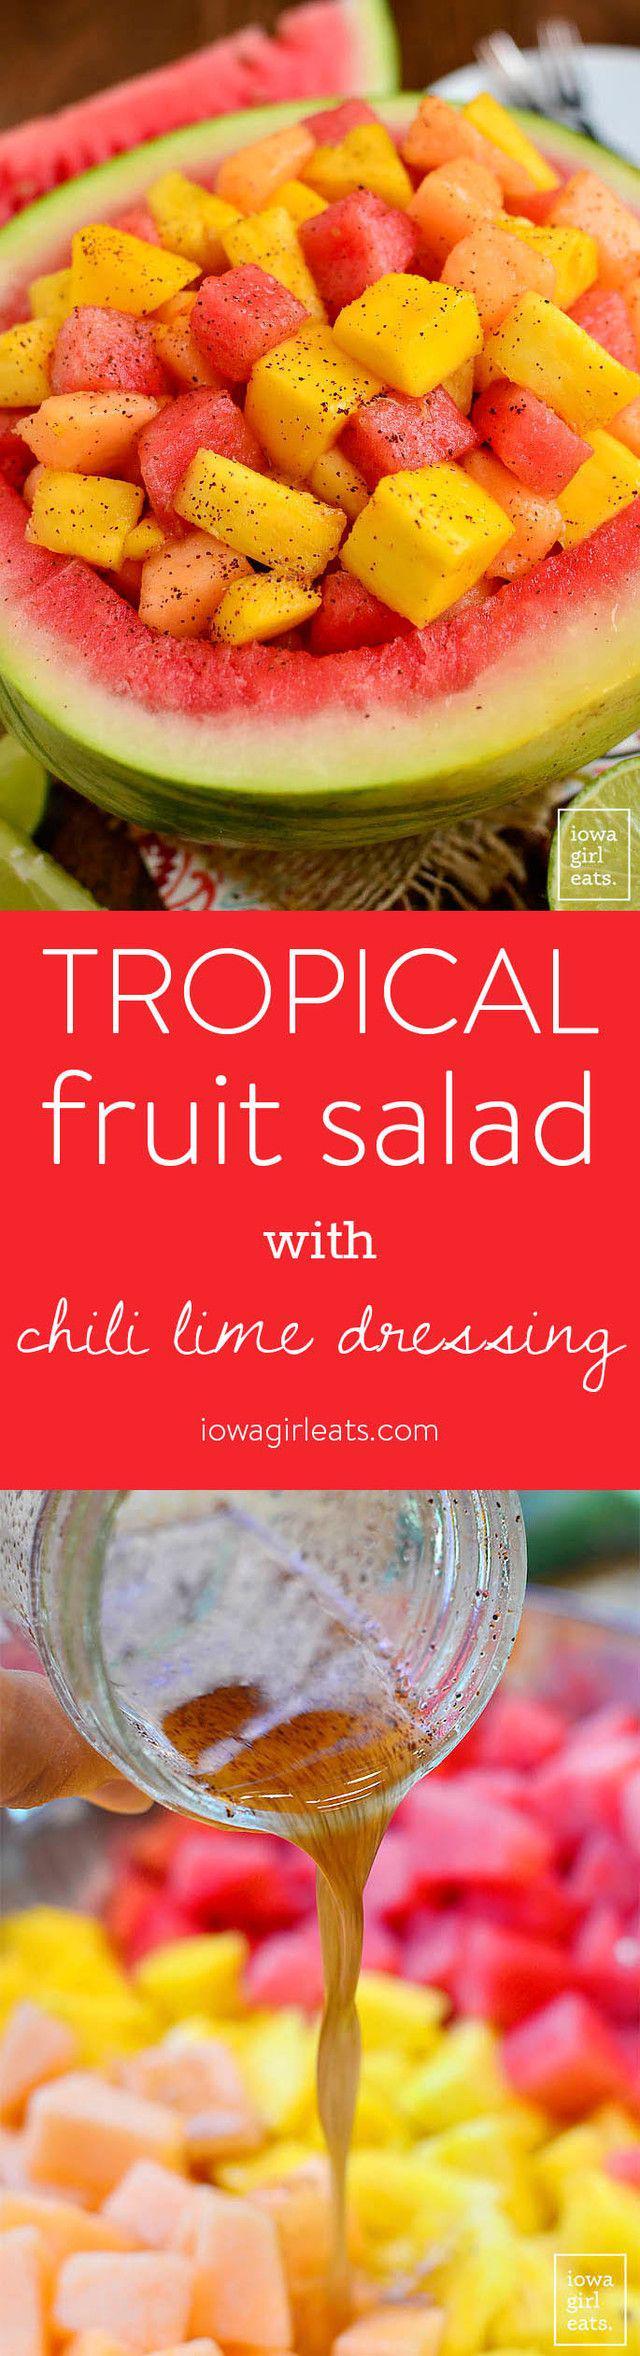 รูปภาพ:http://cdn.iowagirleats.com/wp-content/uploads/2016/07/Tropical-Fruit-Salad-with-Chili-Lime-Dressing-iowagirleats-Vertical.jpg